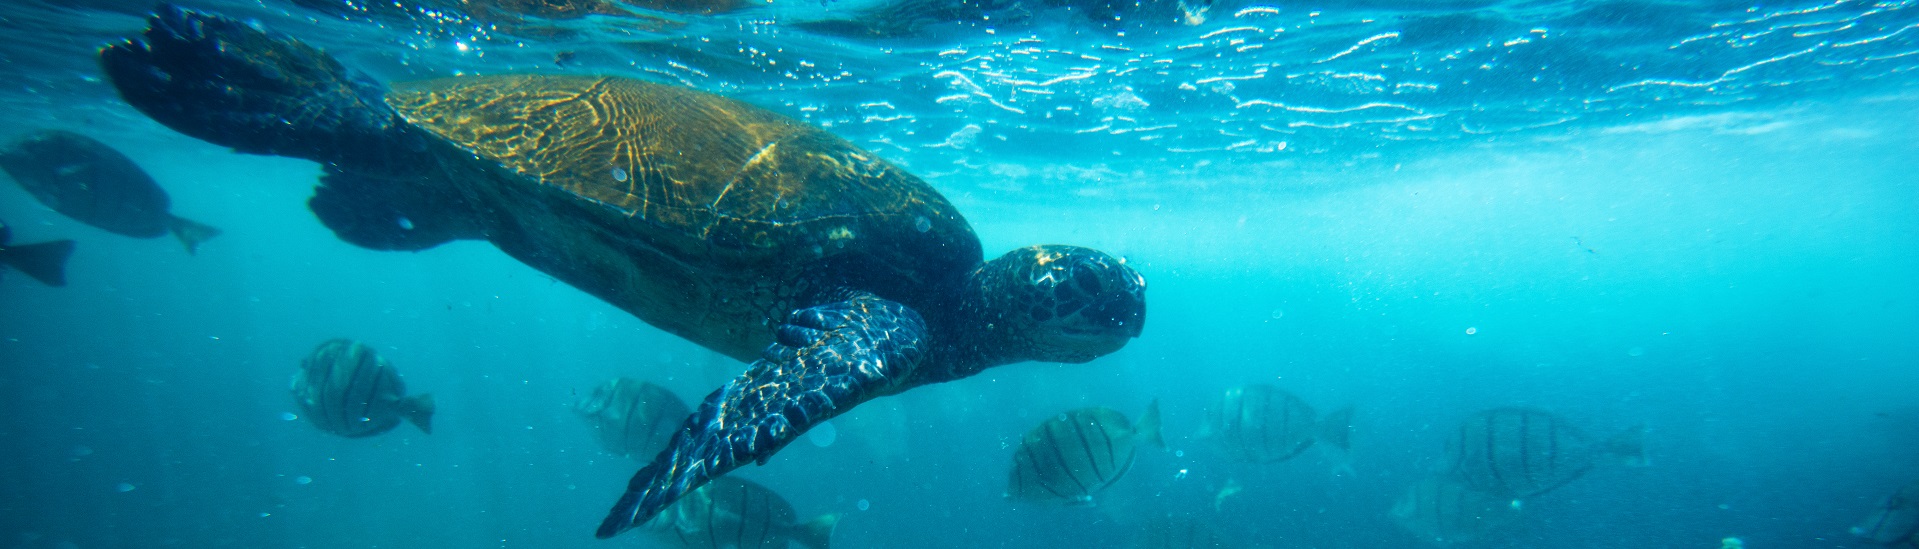 image of sea turtle in ocean